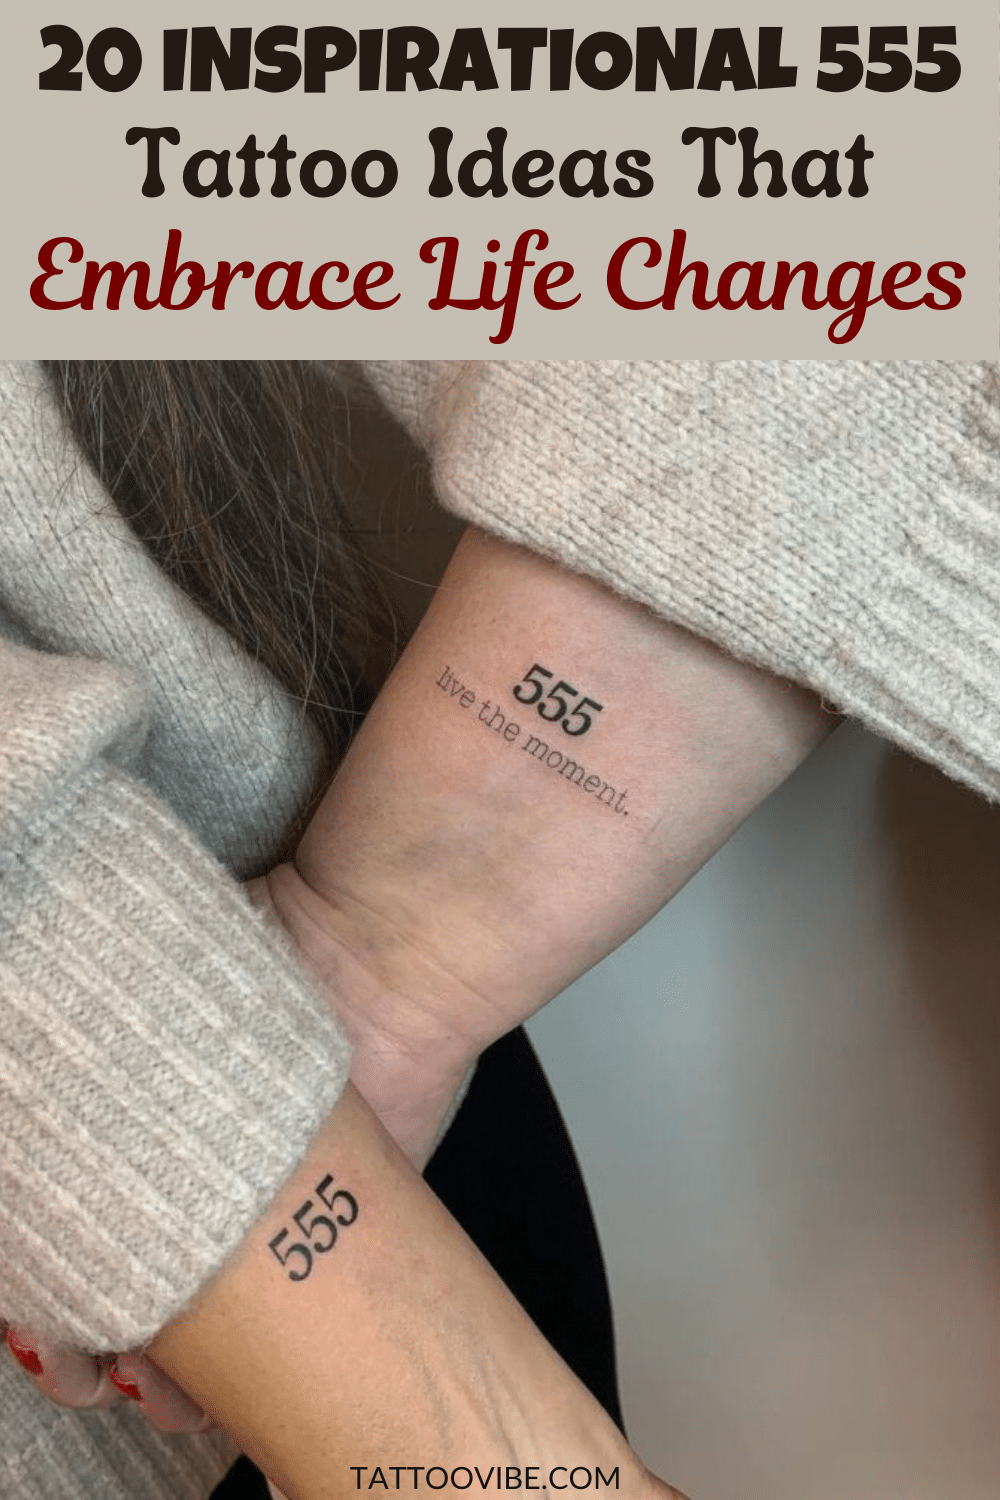 20 Ideias inspiradoras para 555 tatuagens que aceitam mudanças na vida